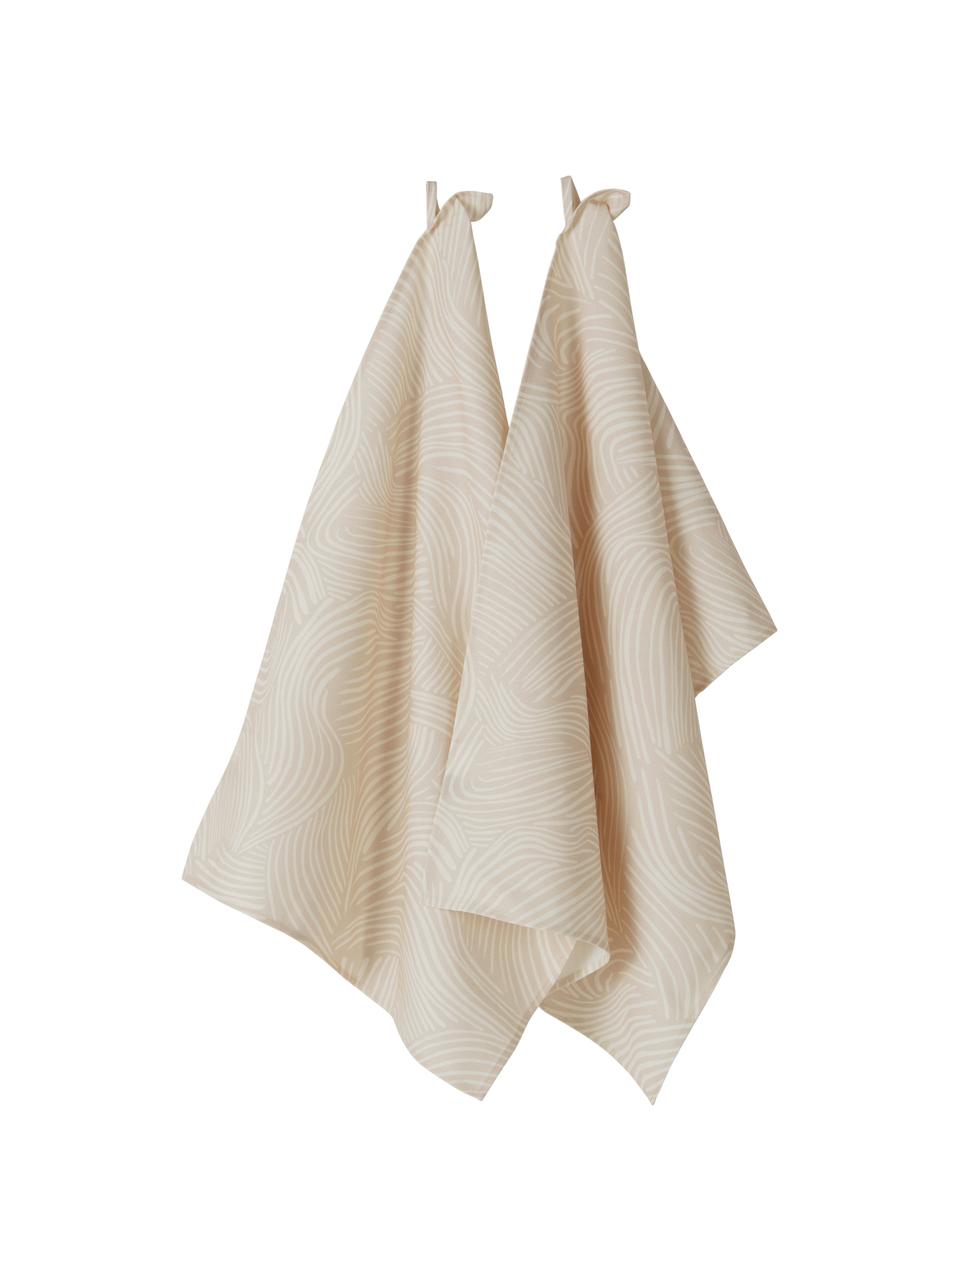 Ręcznik kuchenny z bawełny Vida, 2 szt., 100% bawełna, Beżowy, S 50 x D 70 cm